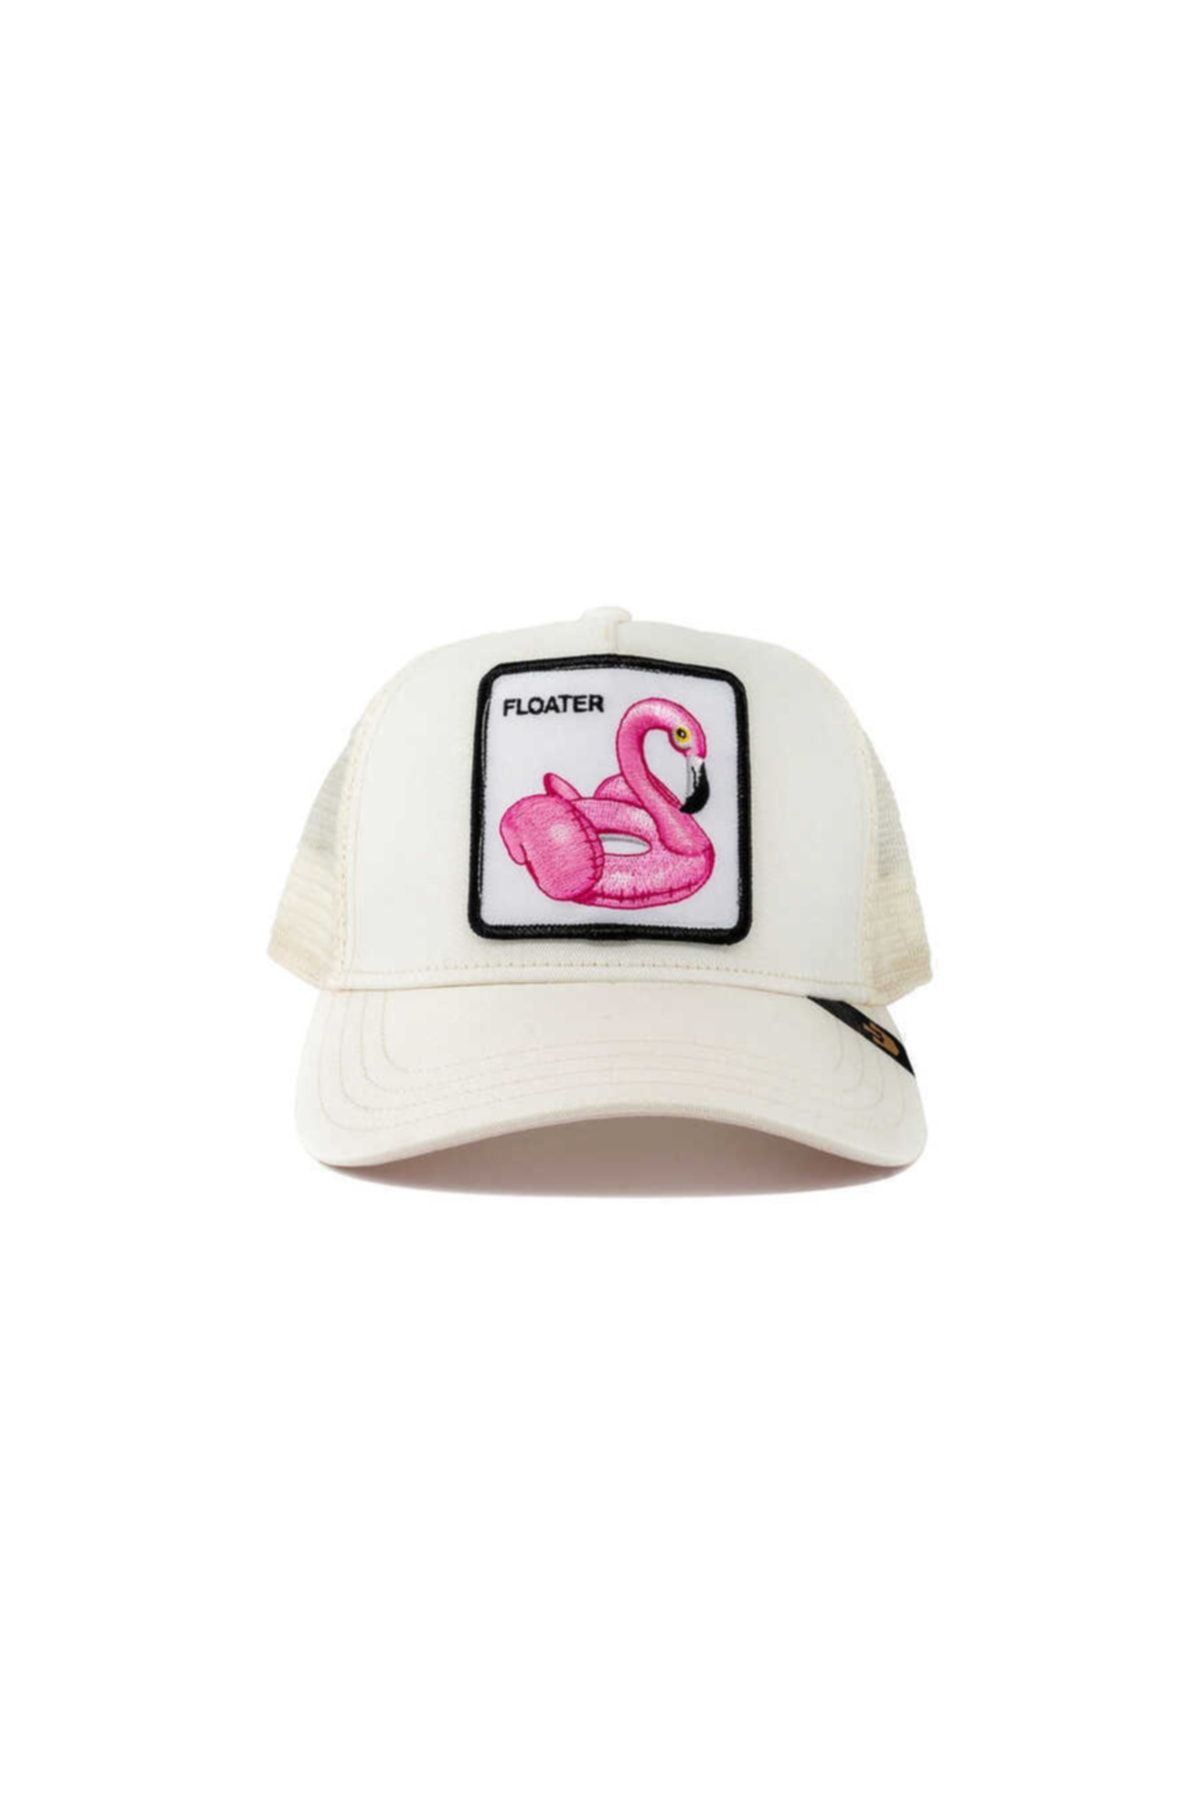 Goorin Bros 101-0425 Floater ( Flamingo Figür ) Beyaz Şapka 101-0425